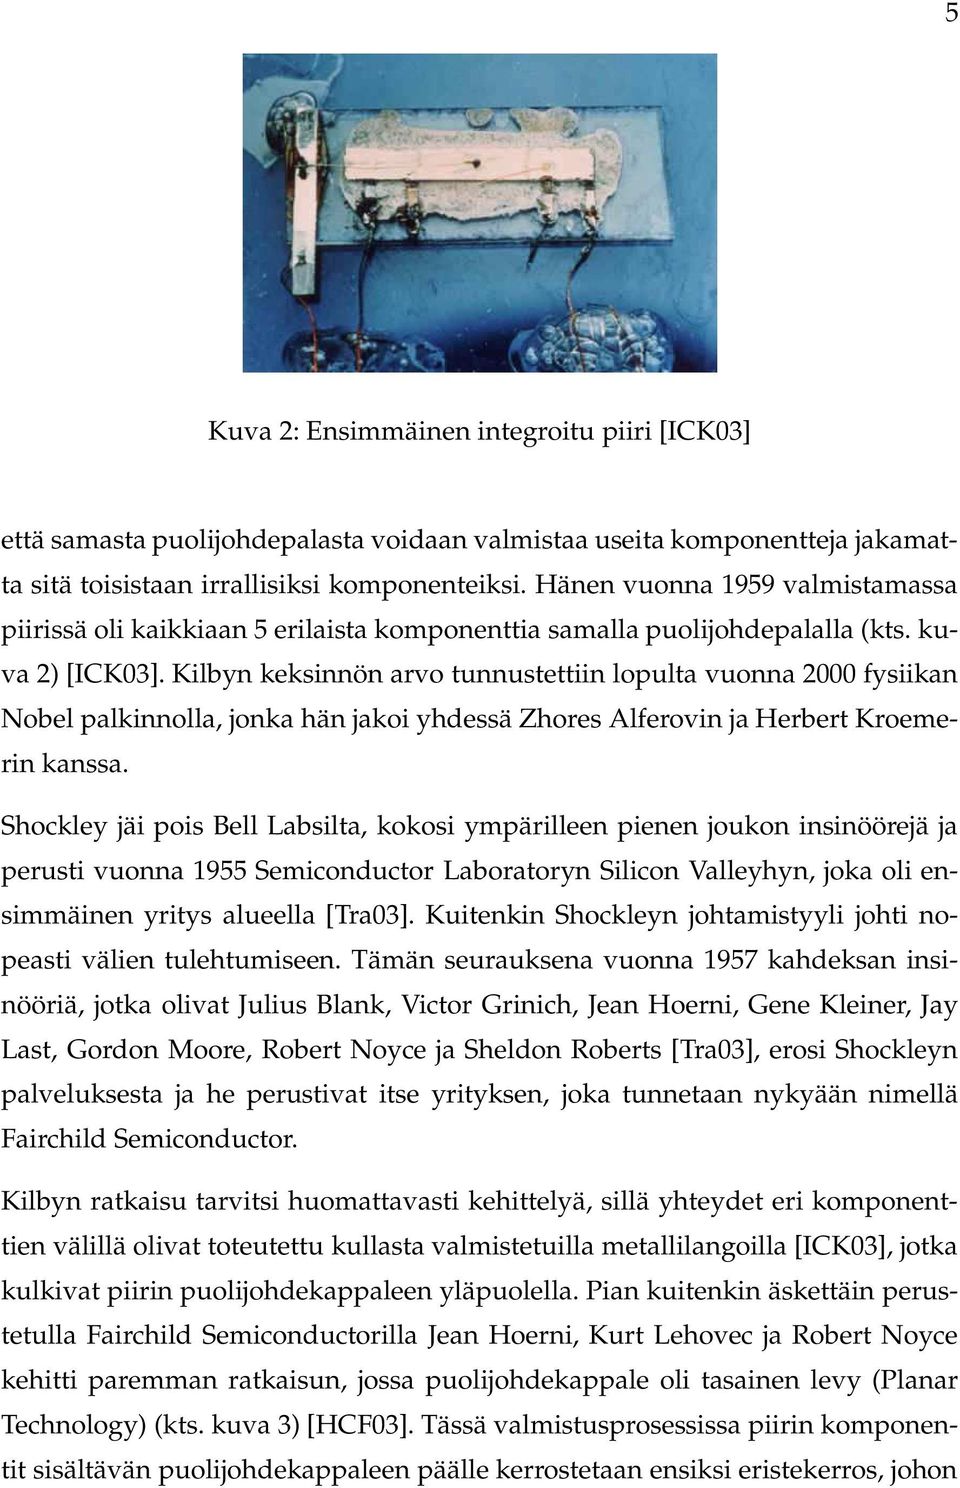 Kilbyn keksinnön arvo tunnustettiin lopulta vuonna 2000 fysiikan Nobel palkinnolla, jonka hän jakoi yhdessä Zhores Alferovin ja Herbert Kroemerin kanssa.